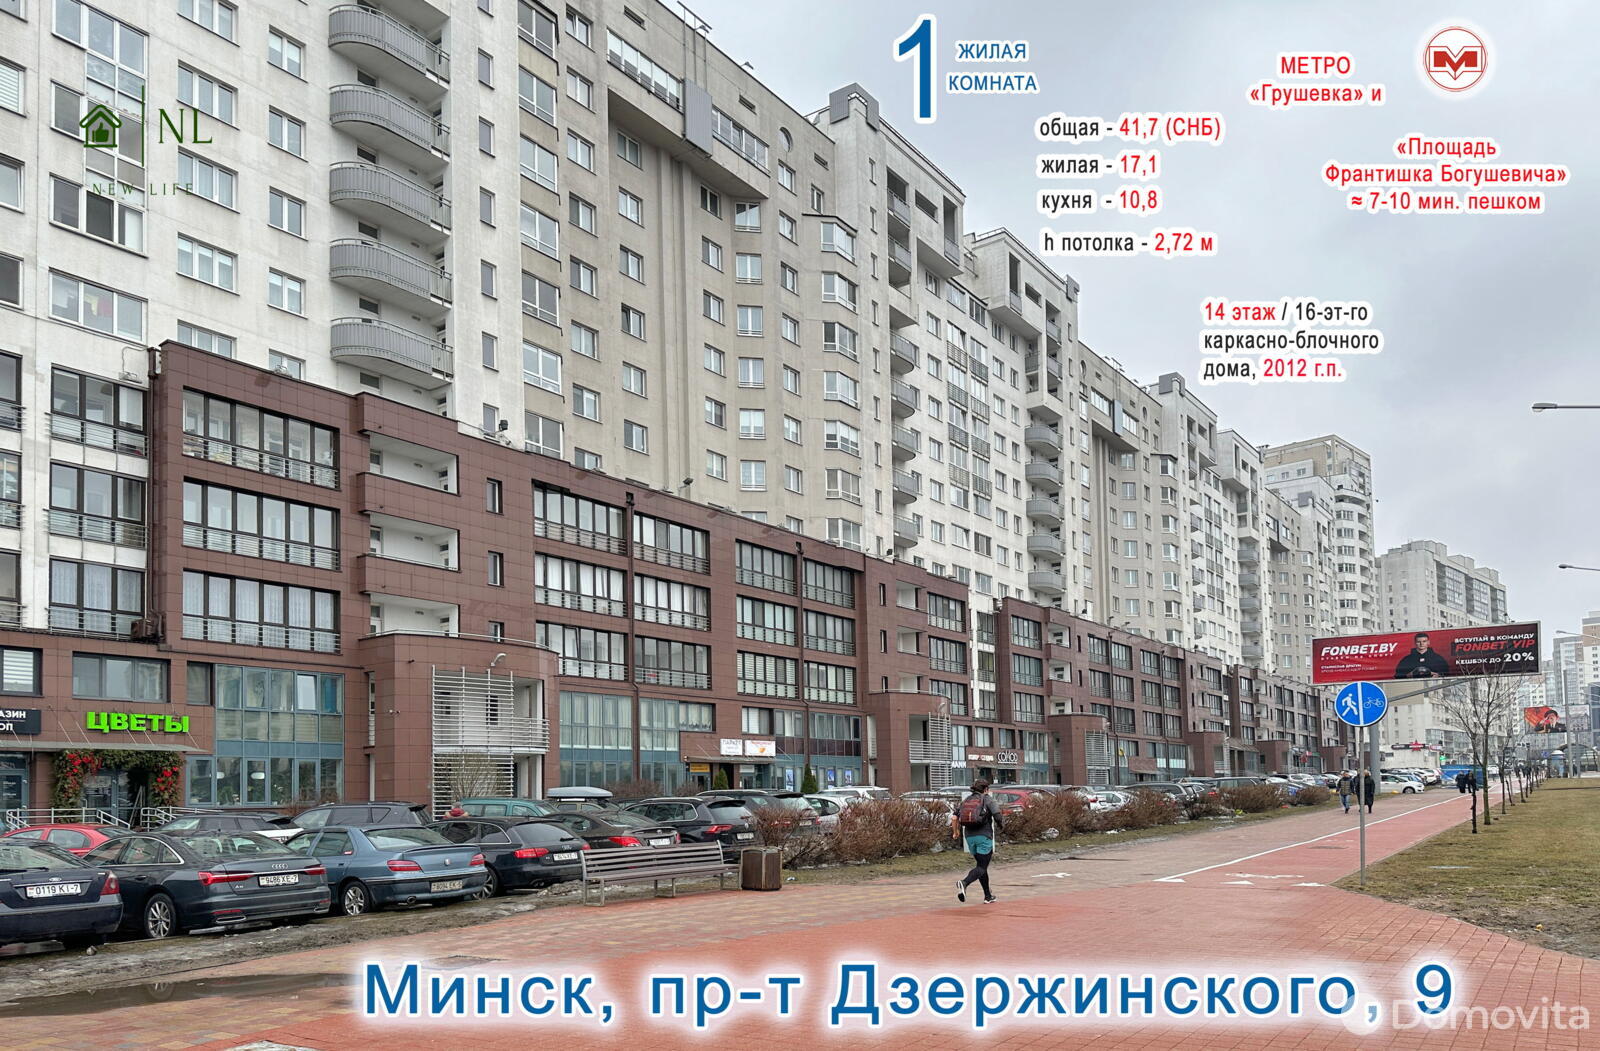 Стоимость продажи квартиры, Минск, пр-т Дзержинского, д. 9